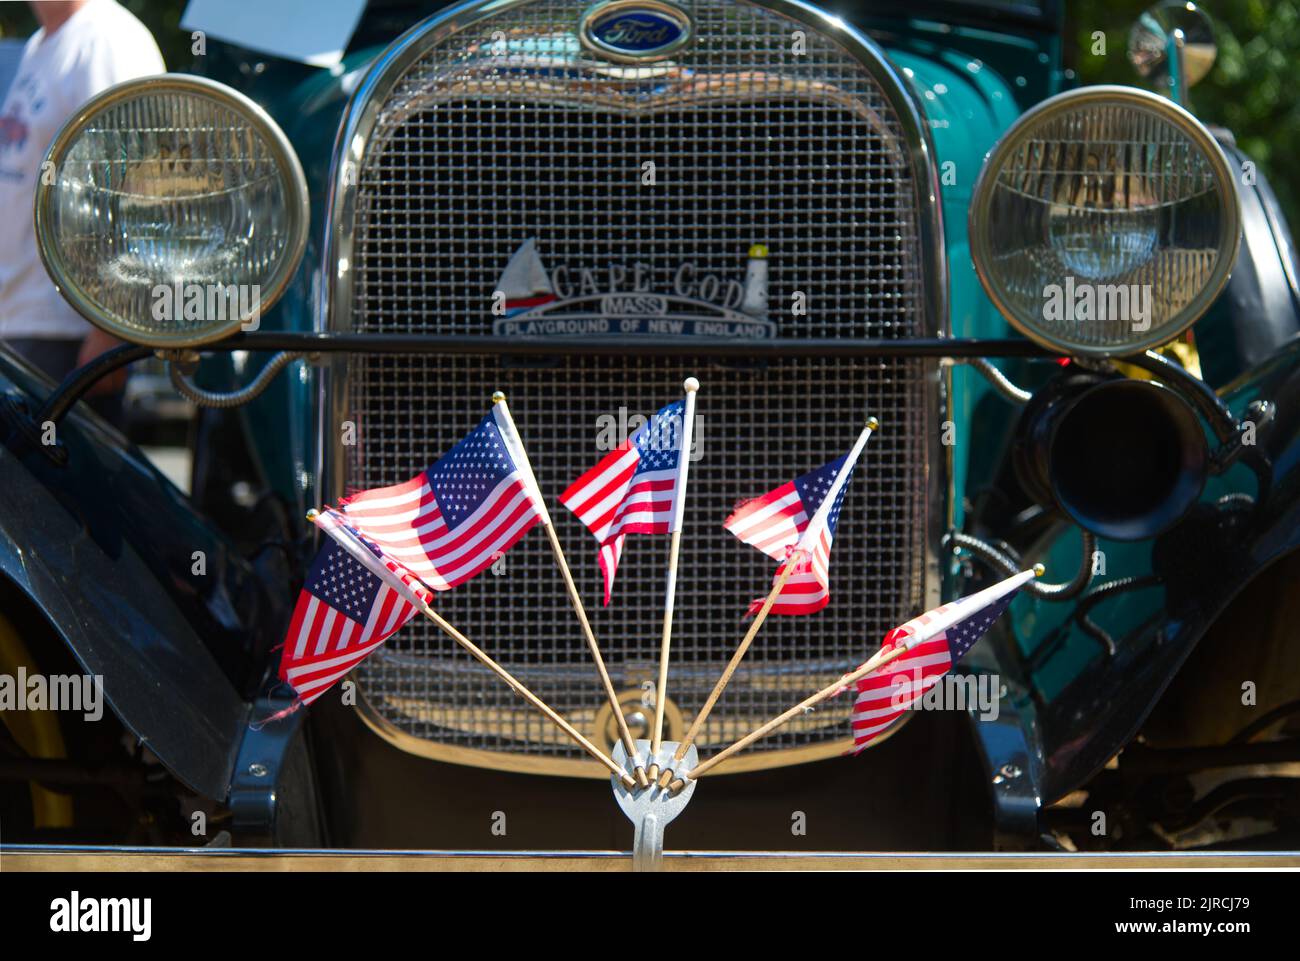 LAS banderas DE EE.UU. Vuelan en el parachoques delantero de un Ford antiguo restaurado en un desfile de autos antiguos en Dennis, Massachusetts, Cape Cod, EE.UU Foto de stock